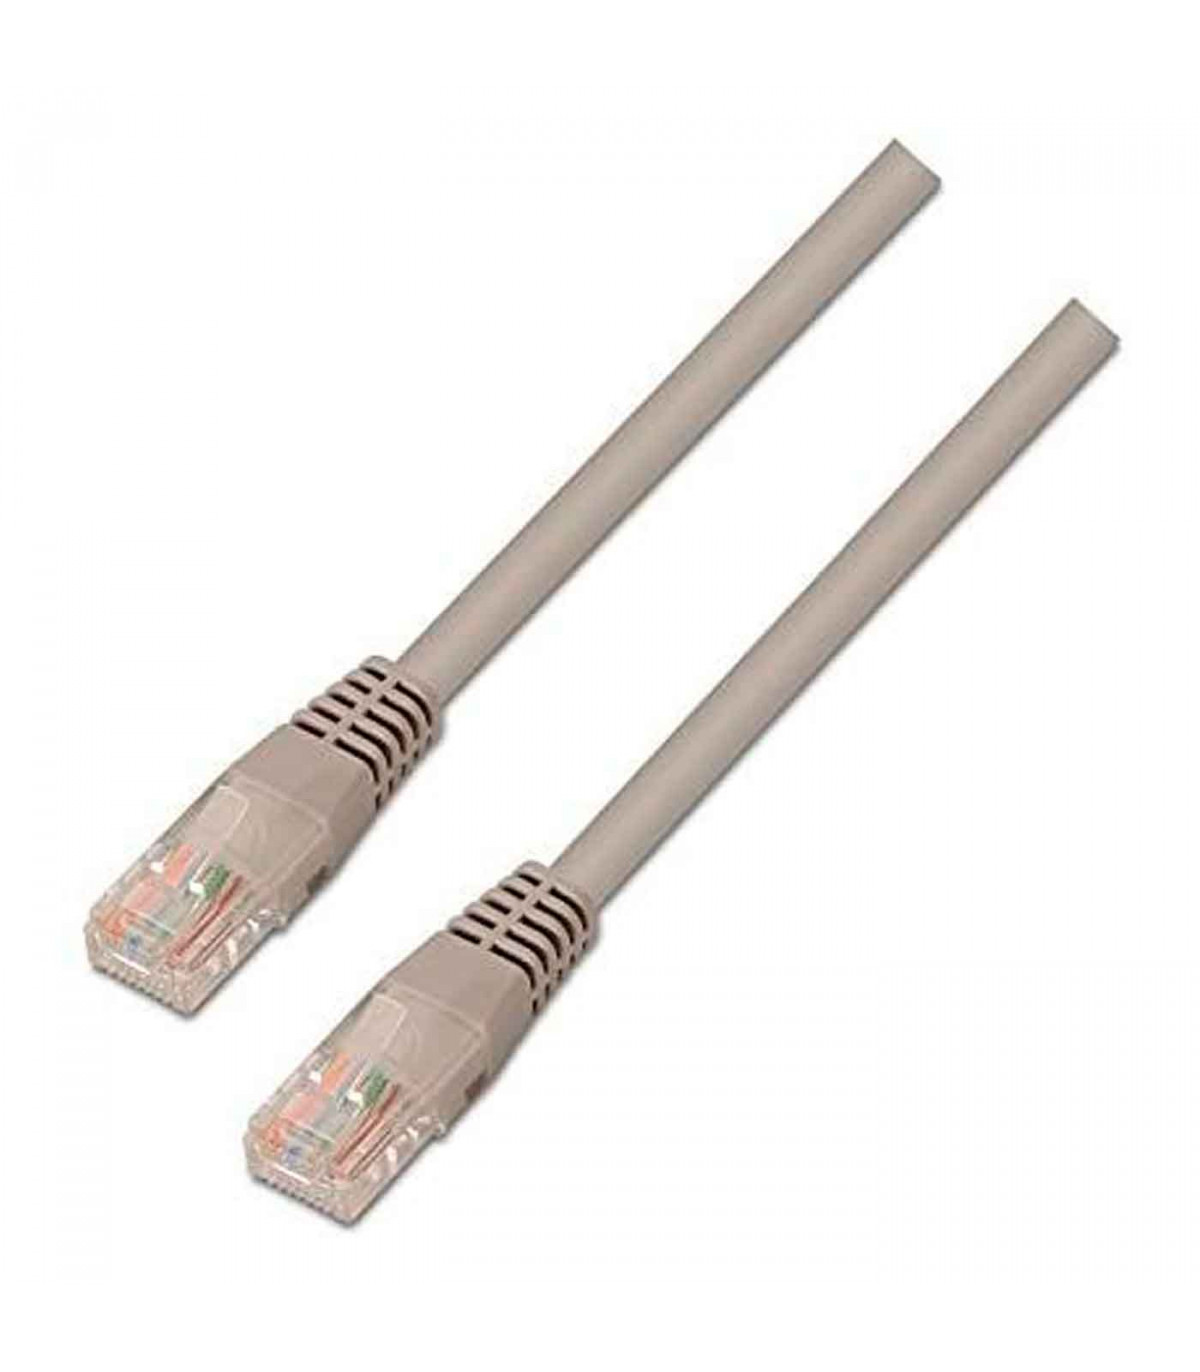 Tradineur - Cable de red Ethernet RJ45 - Fabricado en plástico y latón -  Cuenta con una longitud de 20 Metros - Cable para trans